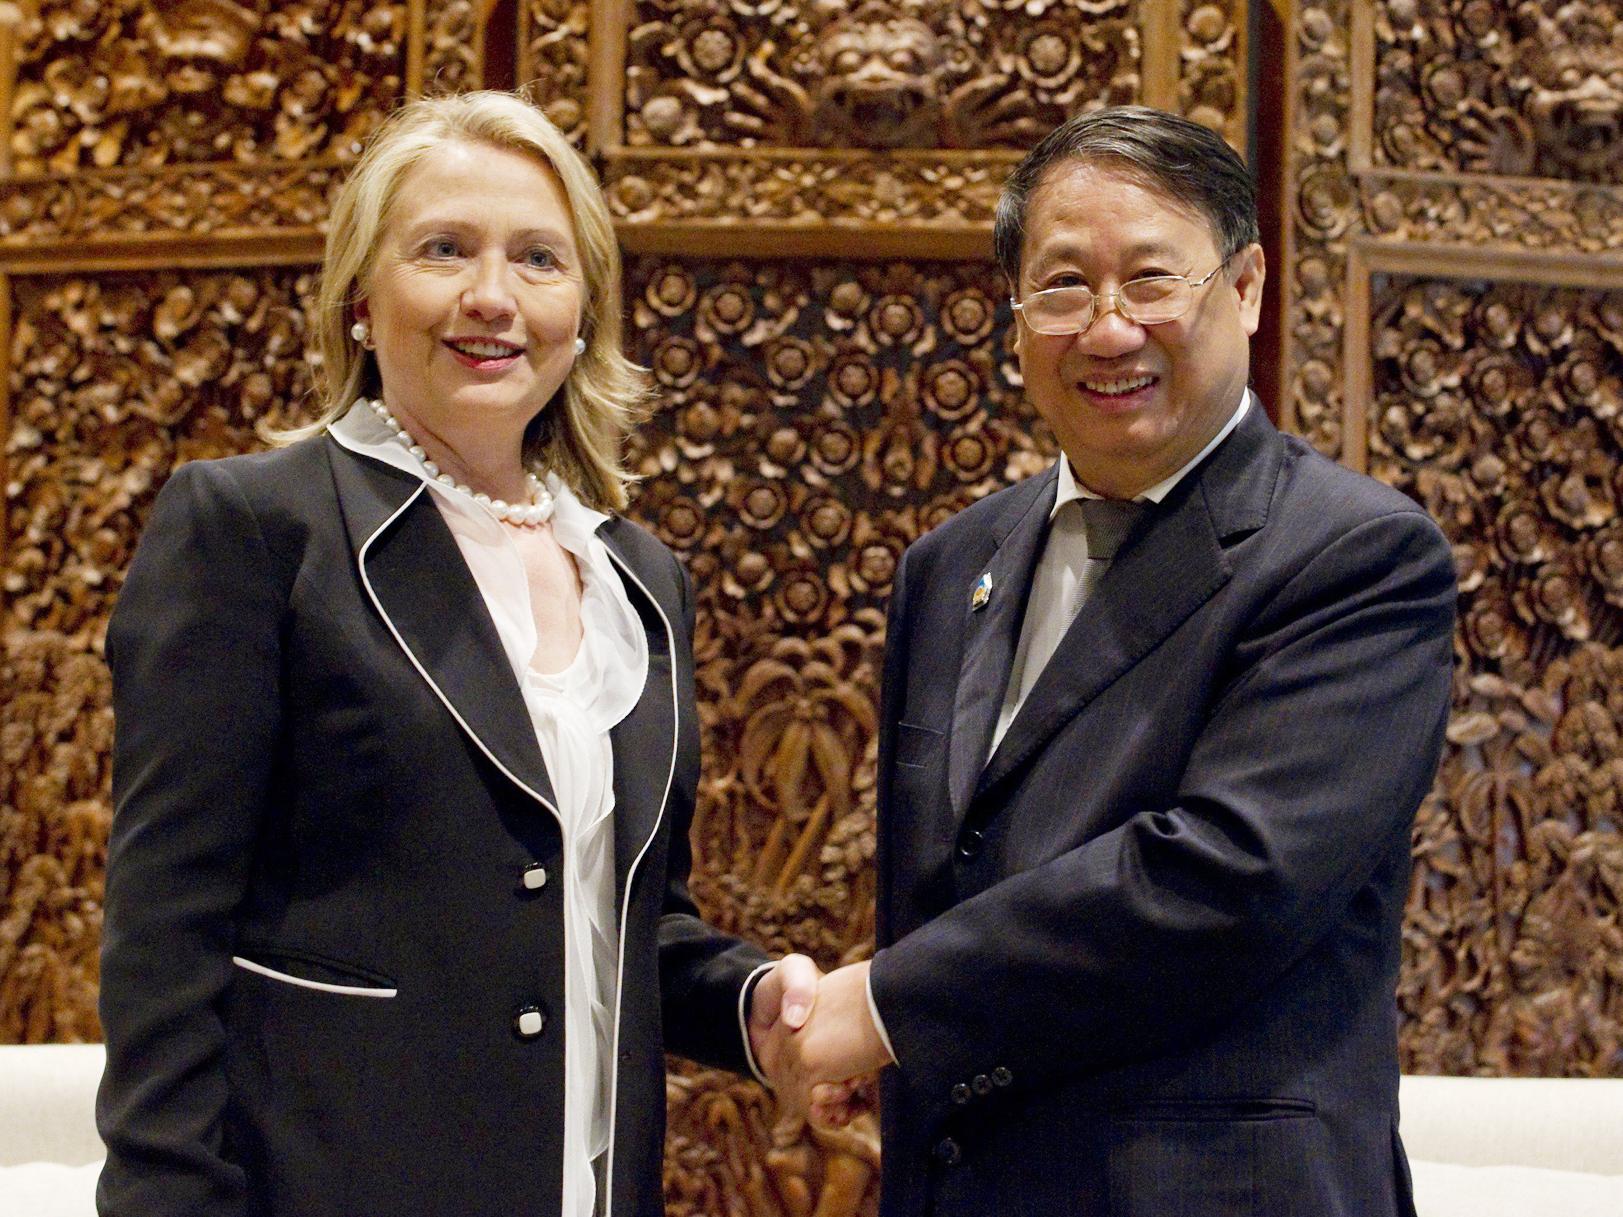 Phó Thủ tướng kiêm Bộ trưởng Ngoại giao Việt Nam Phạm Gia Khiêm gặp gỡ Ngoại trưởng Mỹ Hillary Clinton